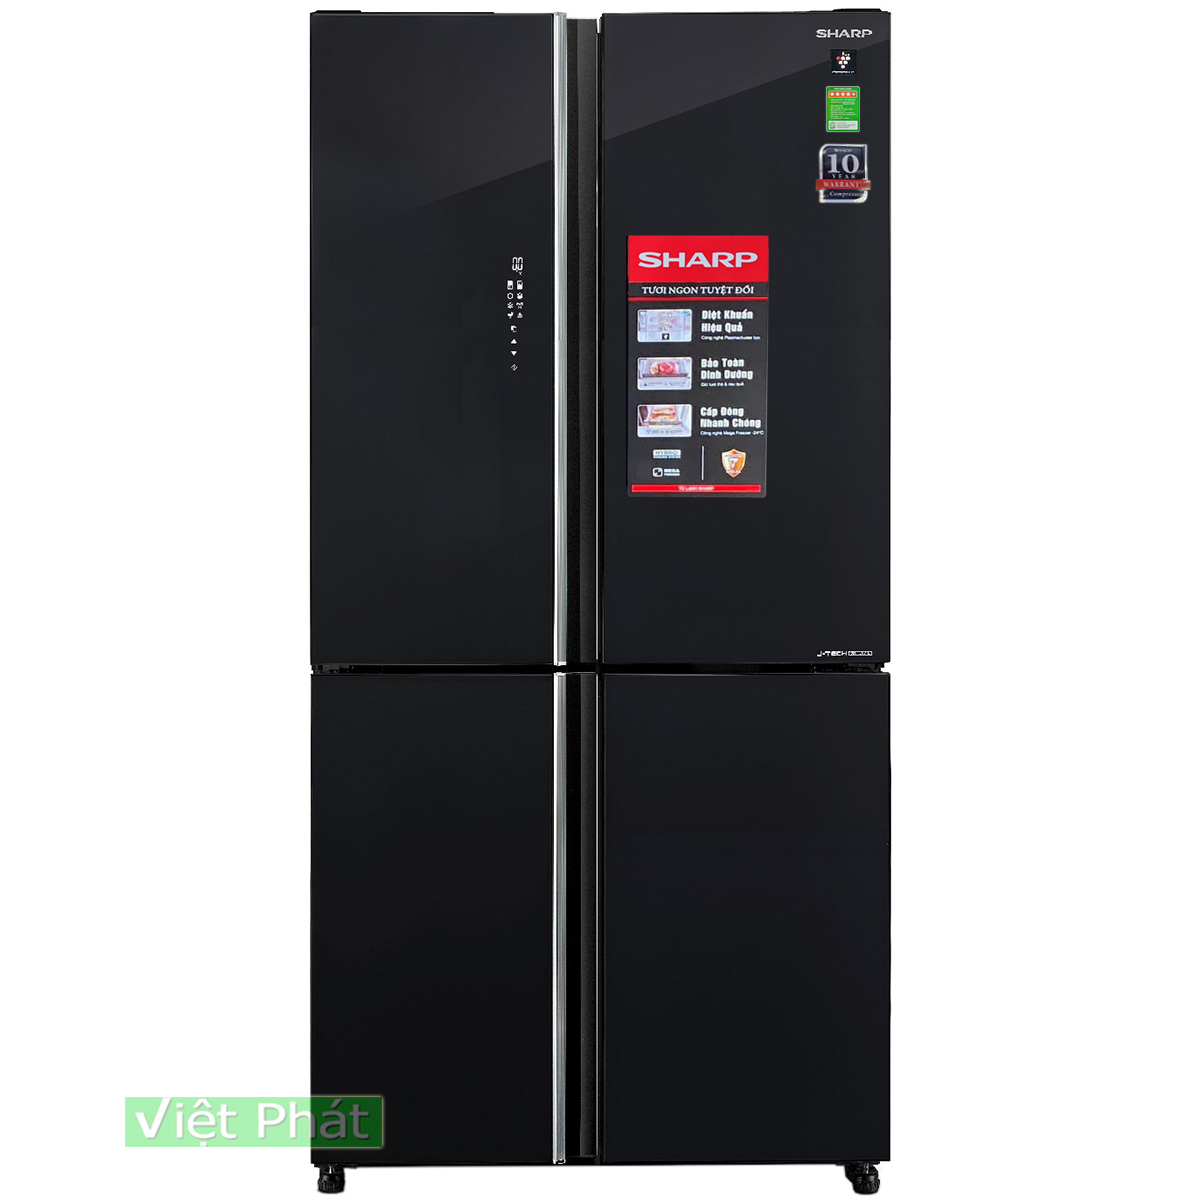 Tủ Lạnh Samsung 644 Lít RF56K9041SG/SV (4 cửa) chính hãng, giá rẻ nhất